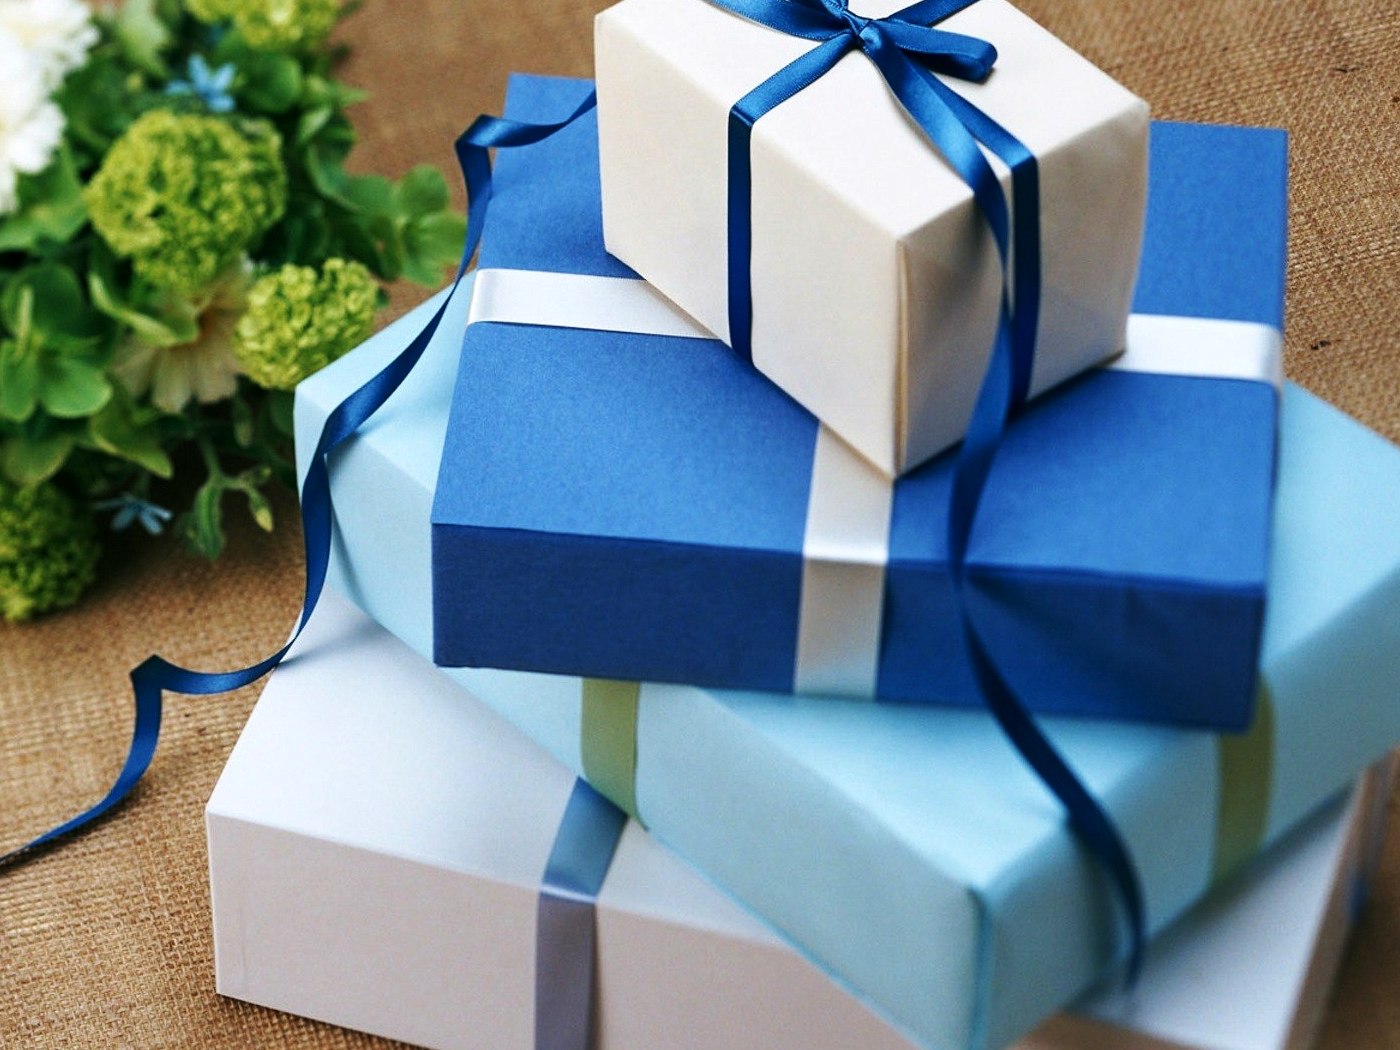 В преддверии новогодних и рождественских праздников обращаем внимание на необходимость соблюдения запрета на дарение и получение подарков